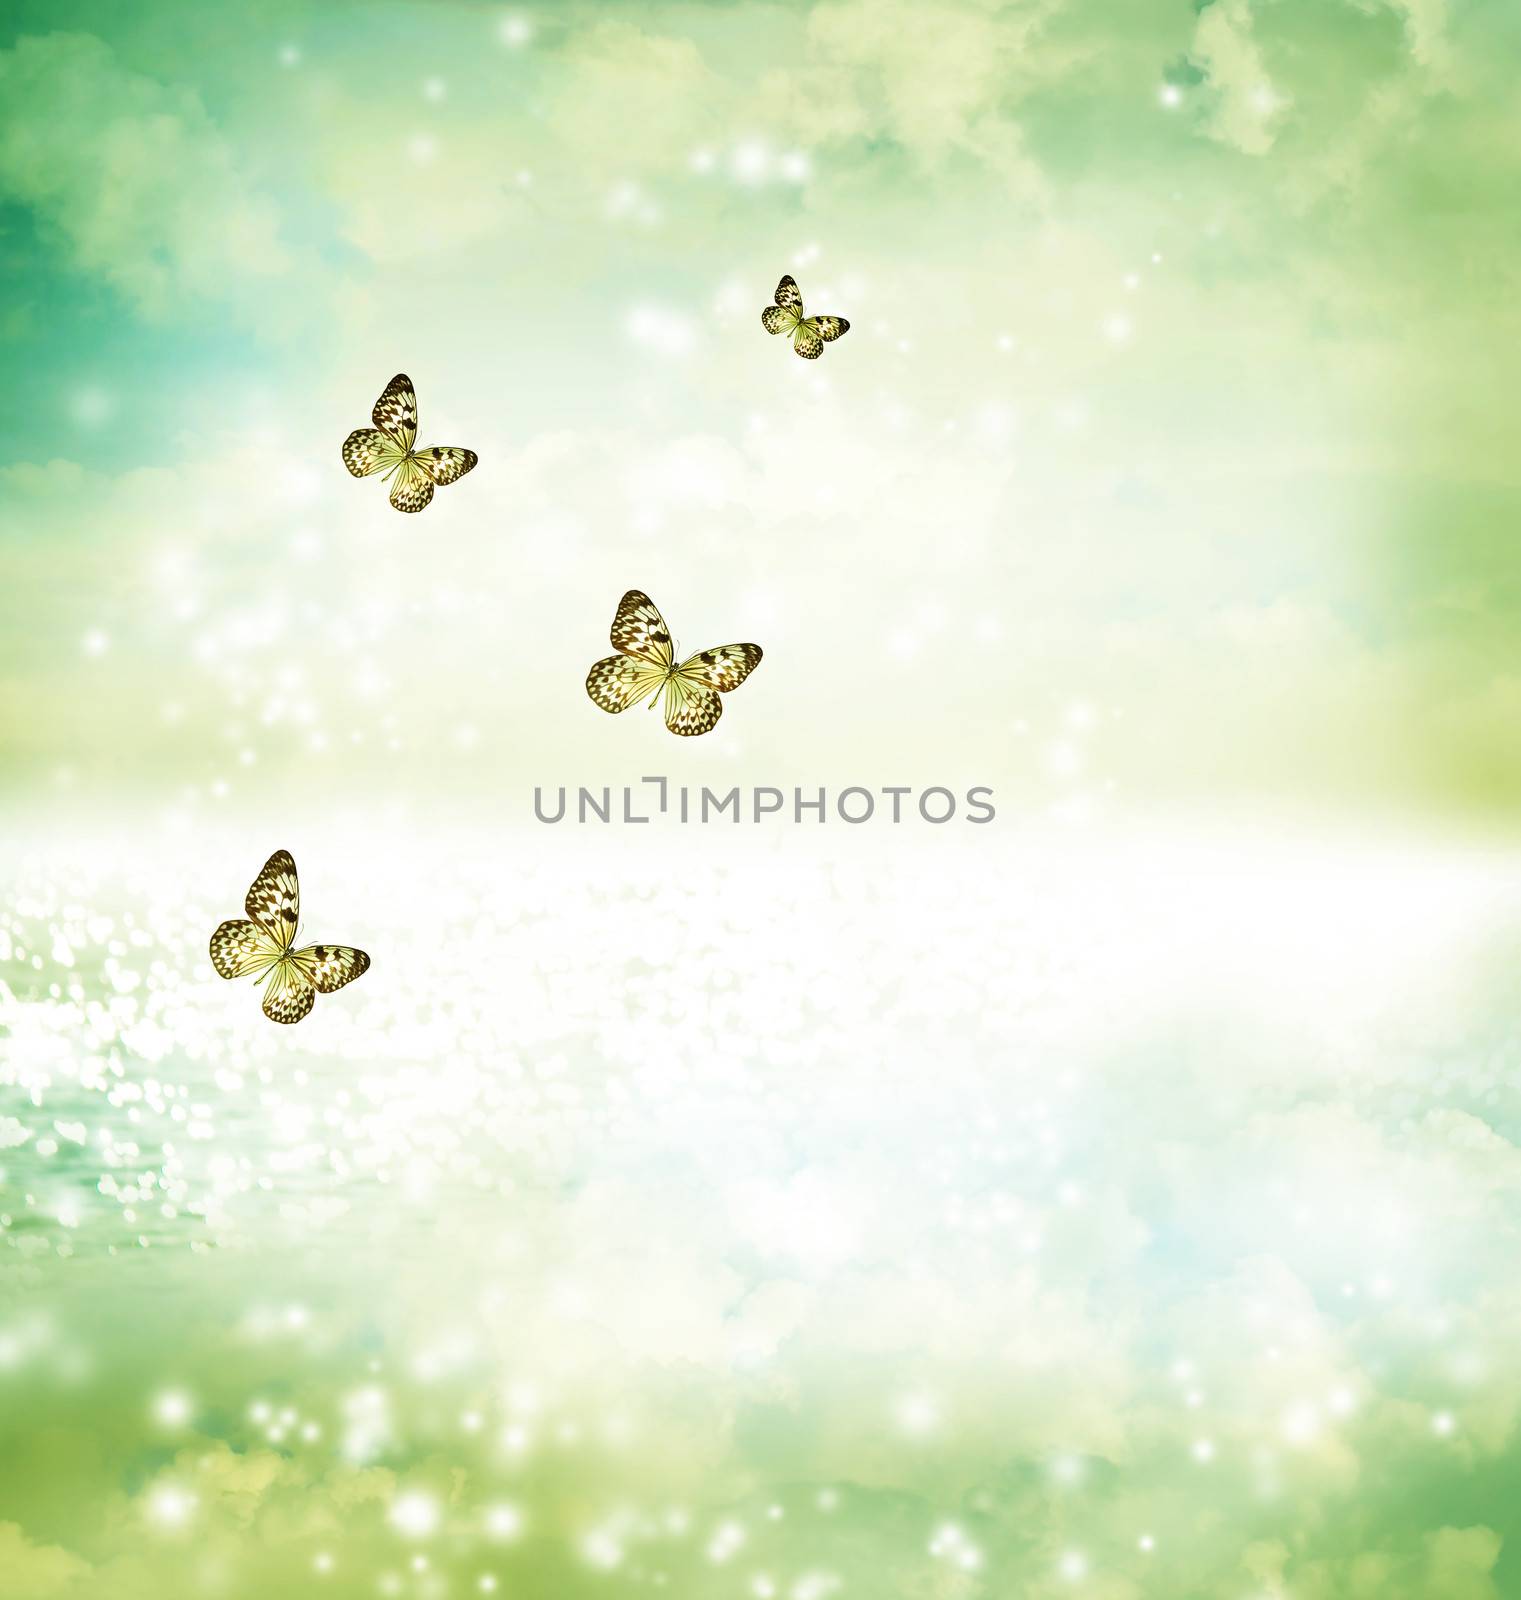 Butterflies on fantasy lake by melpomene